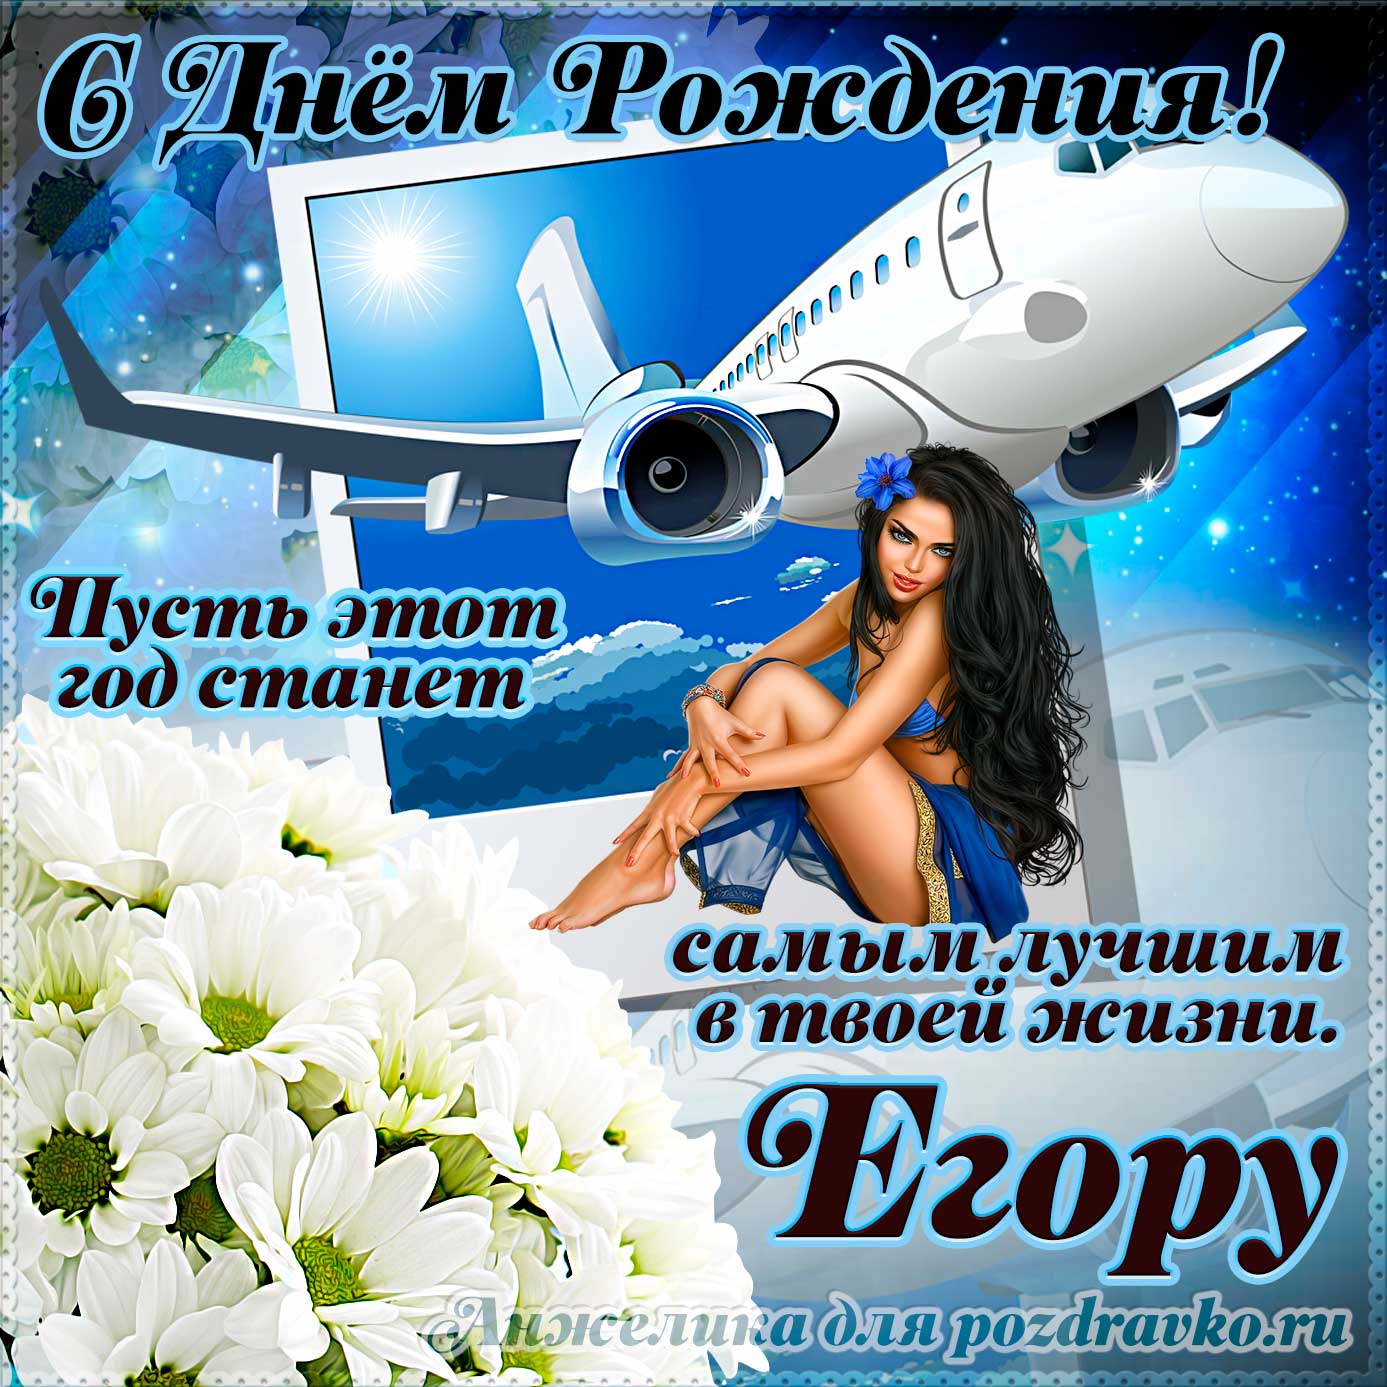 Открытка - Егору на день рождения с красивым пожеланием самолетом и девушкой. Скачать бесплатно или отправить картинку.